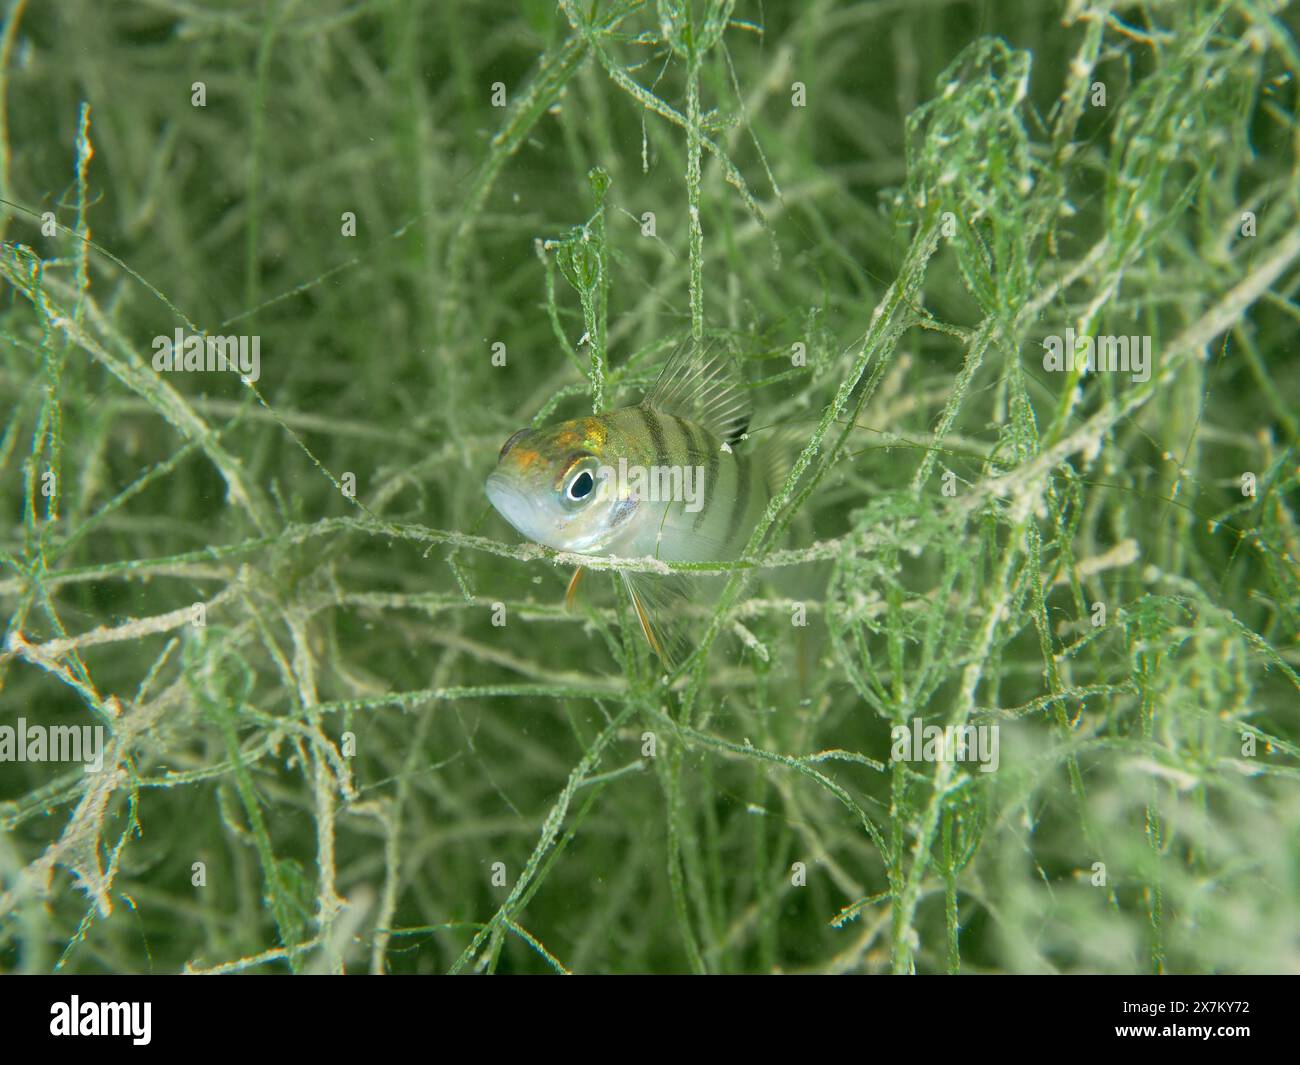 Un piccolo pesce, giovanile persico europeo (Perca fluviatilis), si nasconde in mezzo alla flora subacquea. Sito di immersione Schoggiwand, lago di Zurigo, Kilchberg Foto Stock